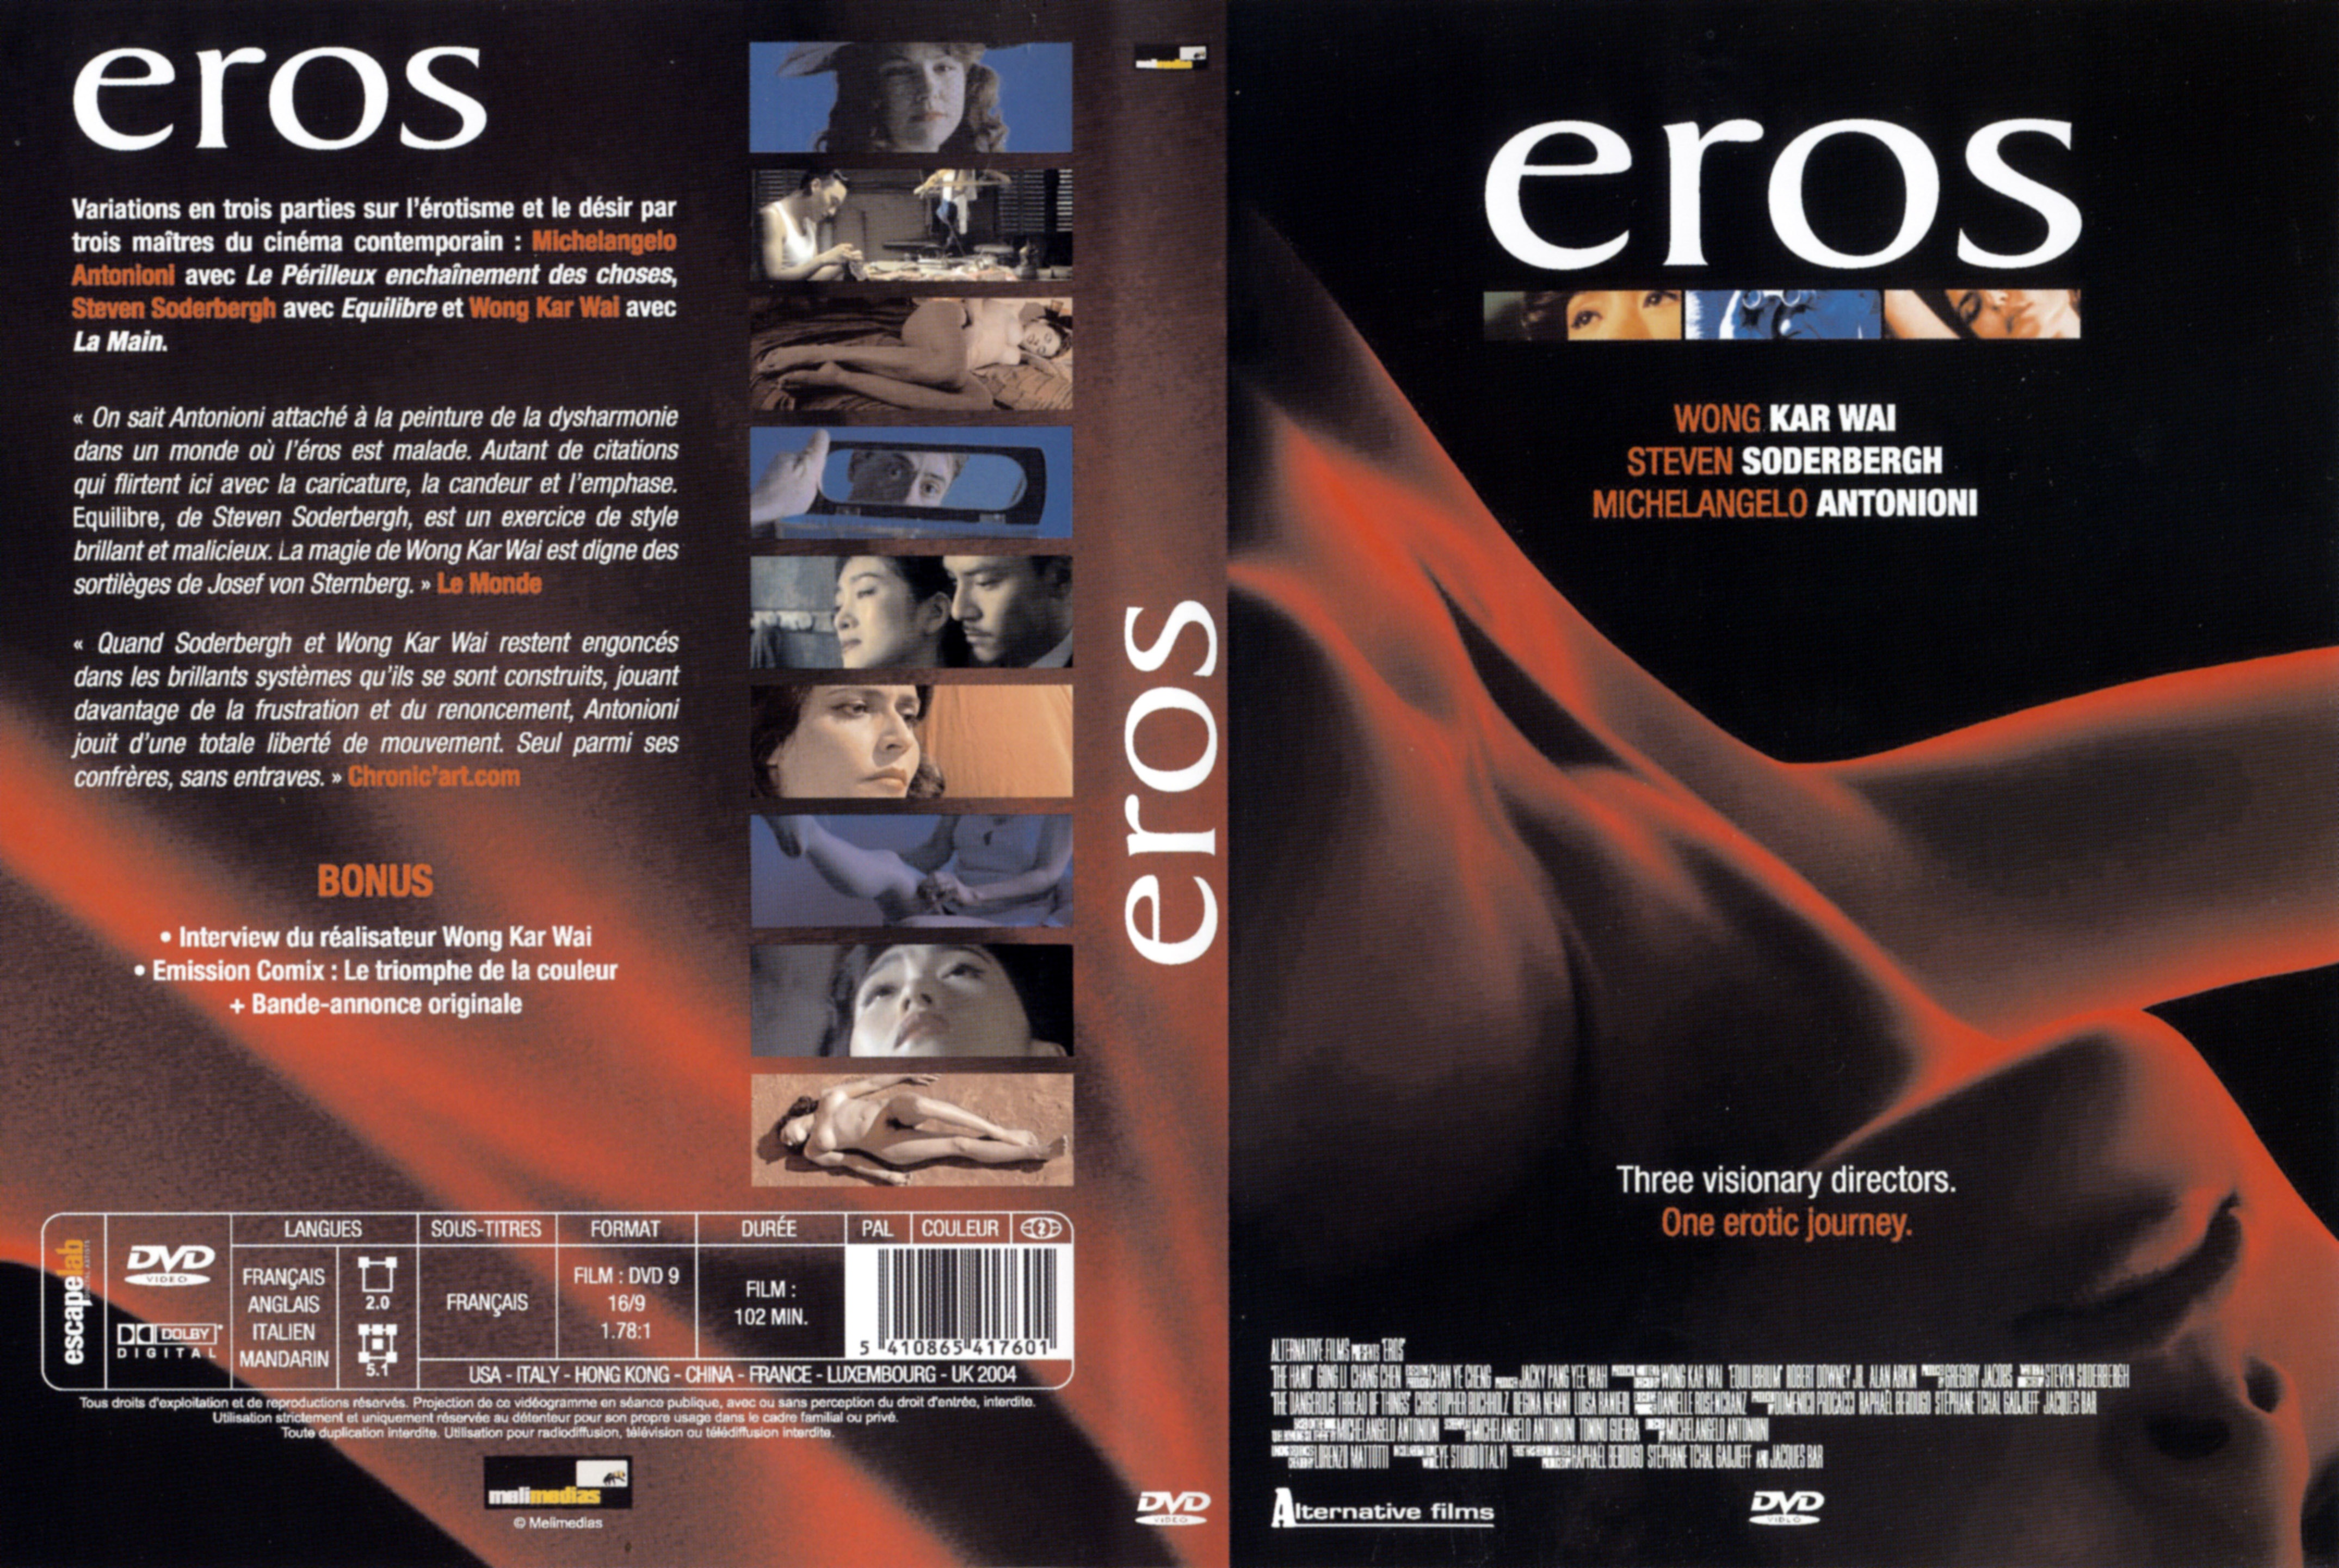 Jaquette DVD Eros